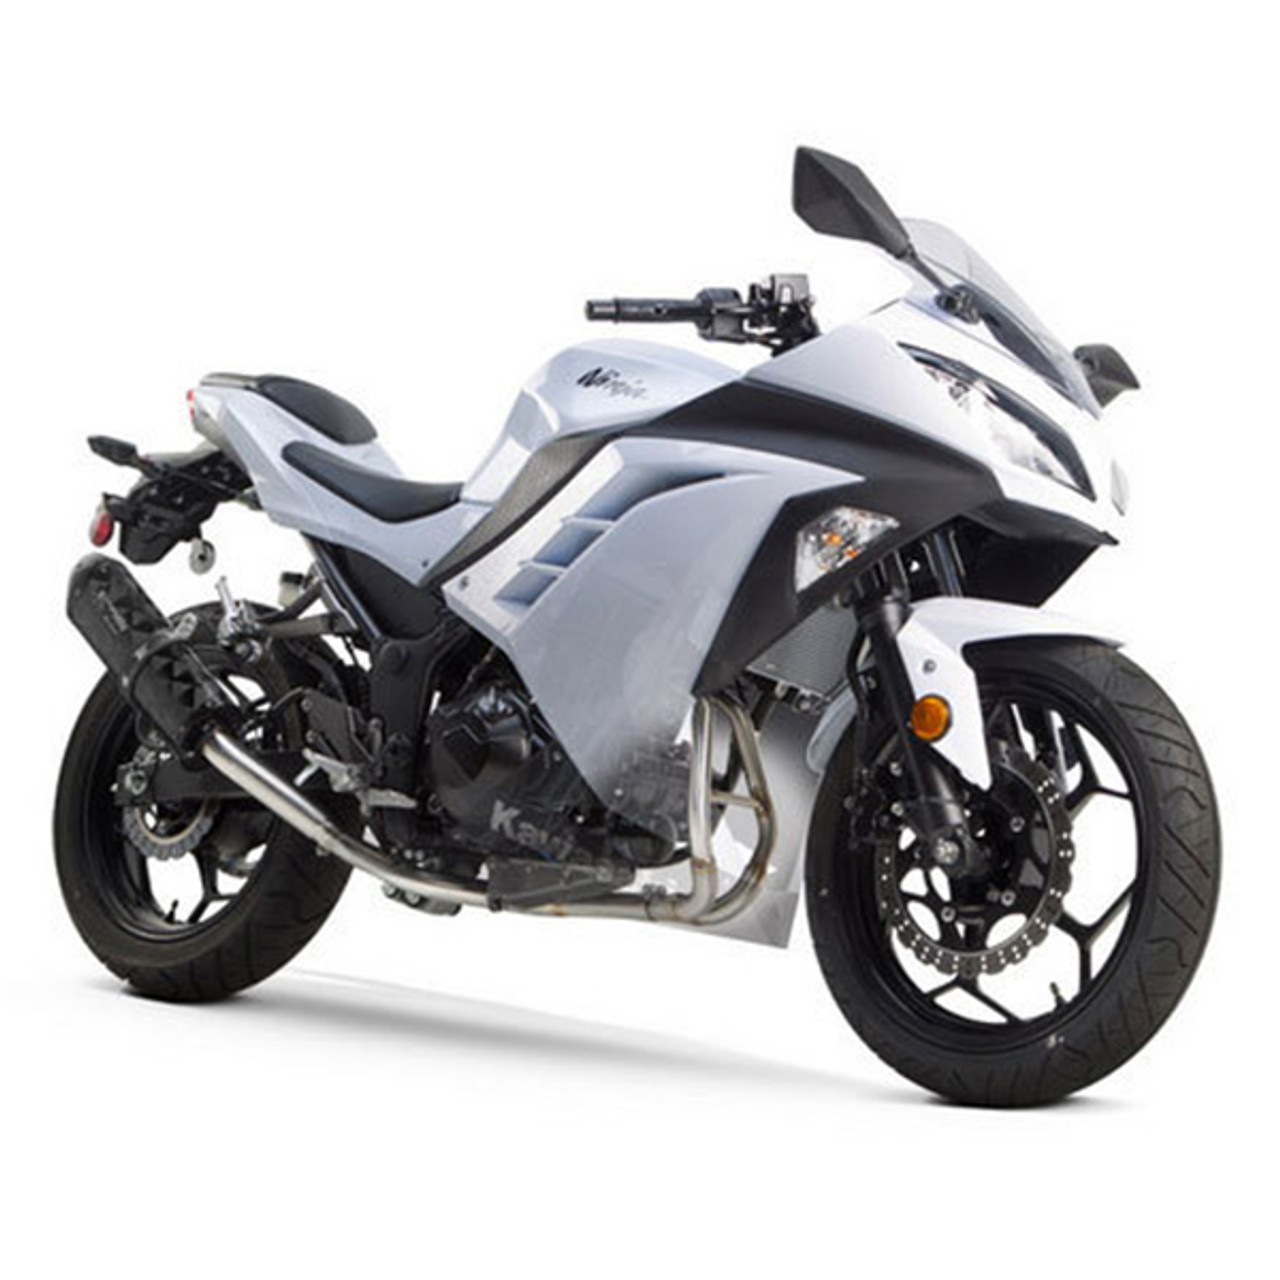 Brothers Kawasaki Ninja 300 13-17 M-2 Series Full Exhaust System - Sportbike Track Gear